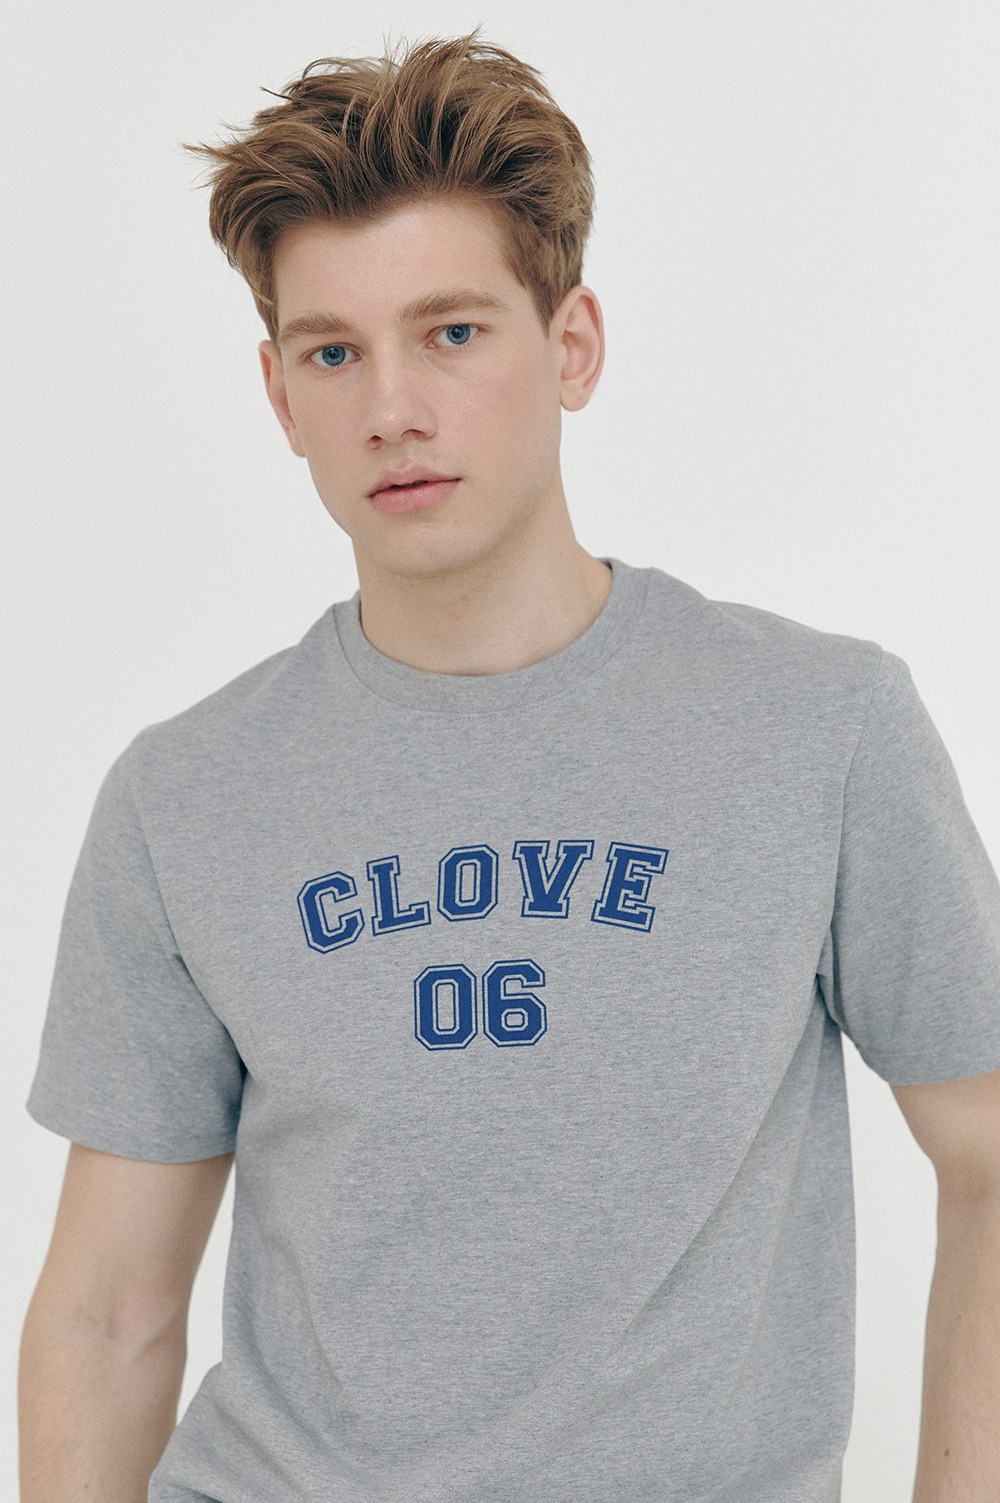 clove - [SS21 clove] Club T-Shirt Melange Grey